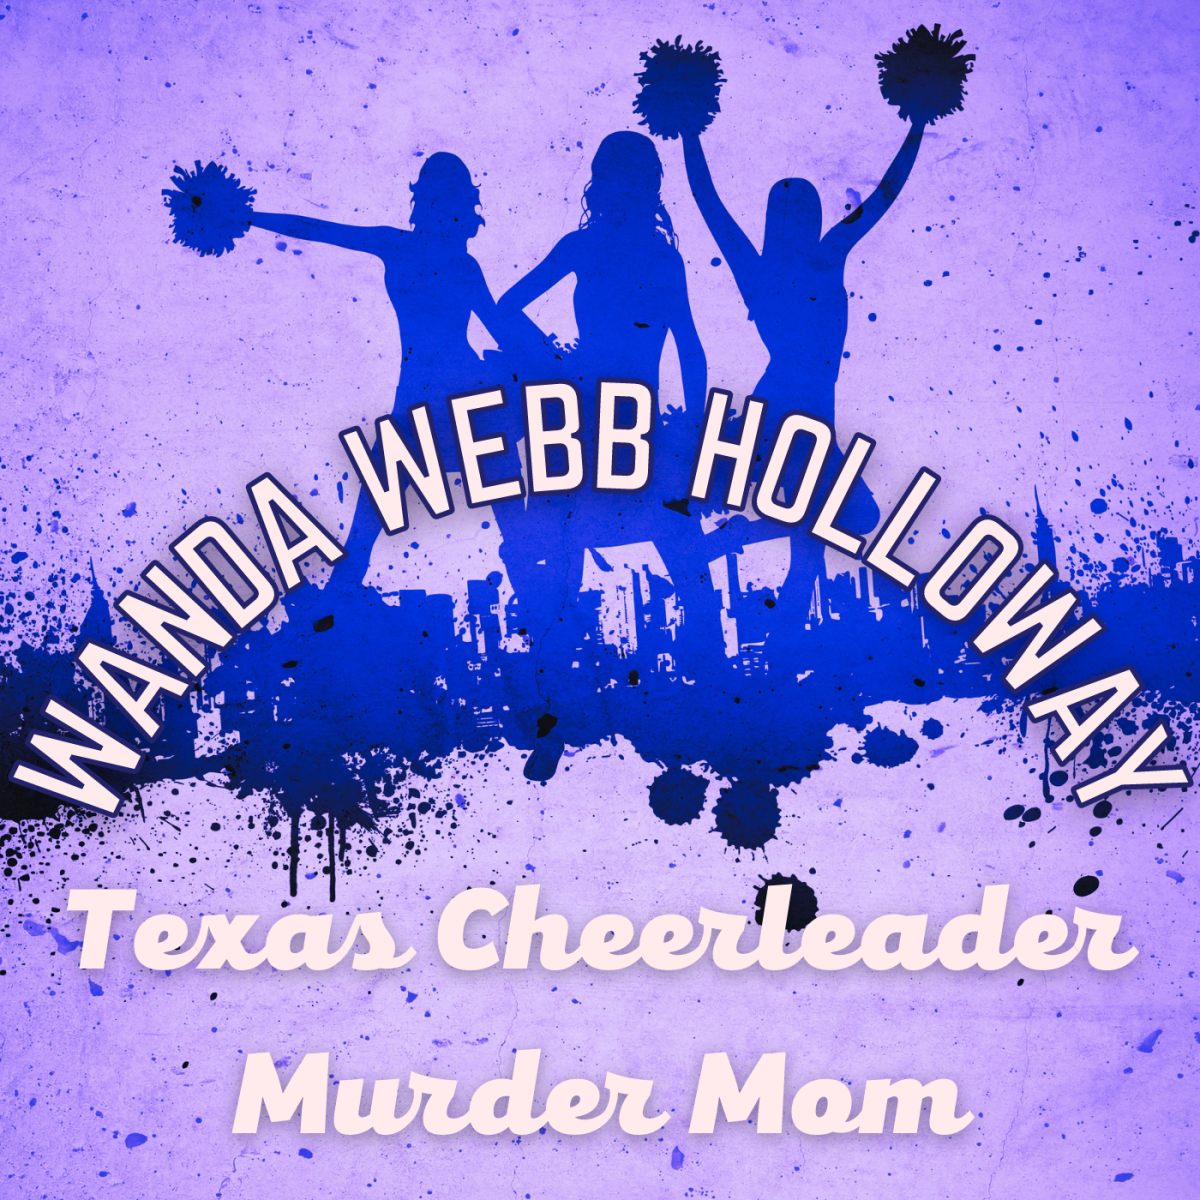 Texas Cheerleader Murder Mom: Wanda Webb Holloway